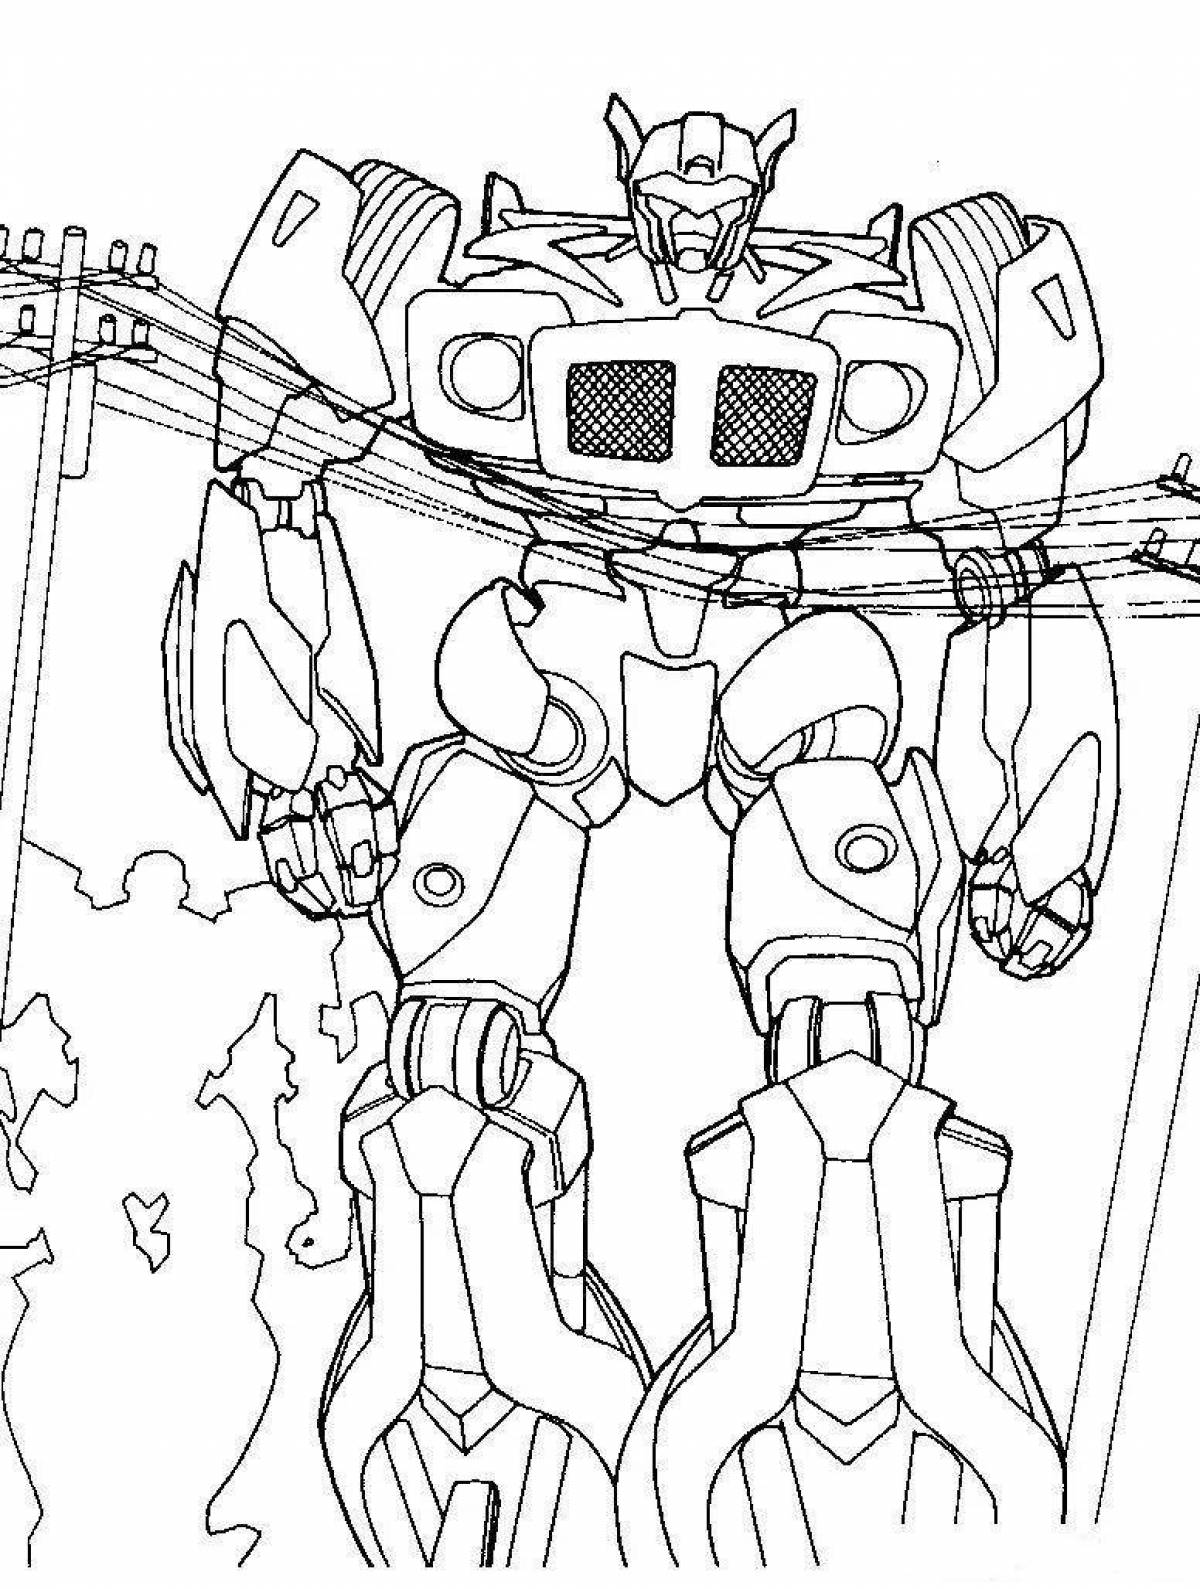 Delicate autobot coloring optimus prime